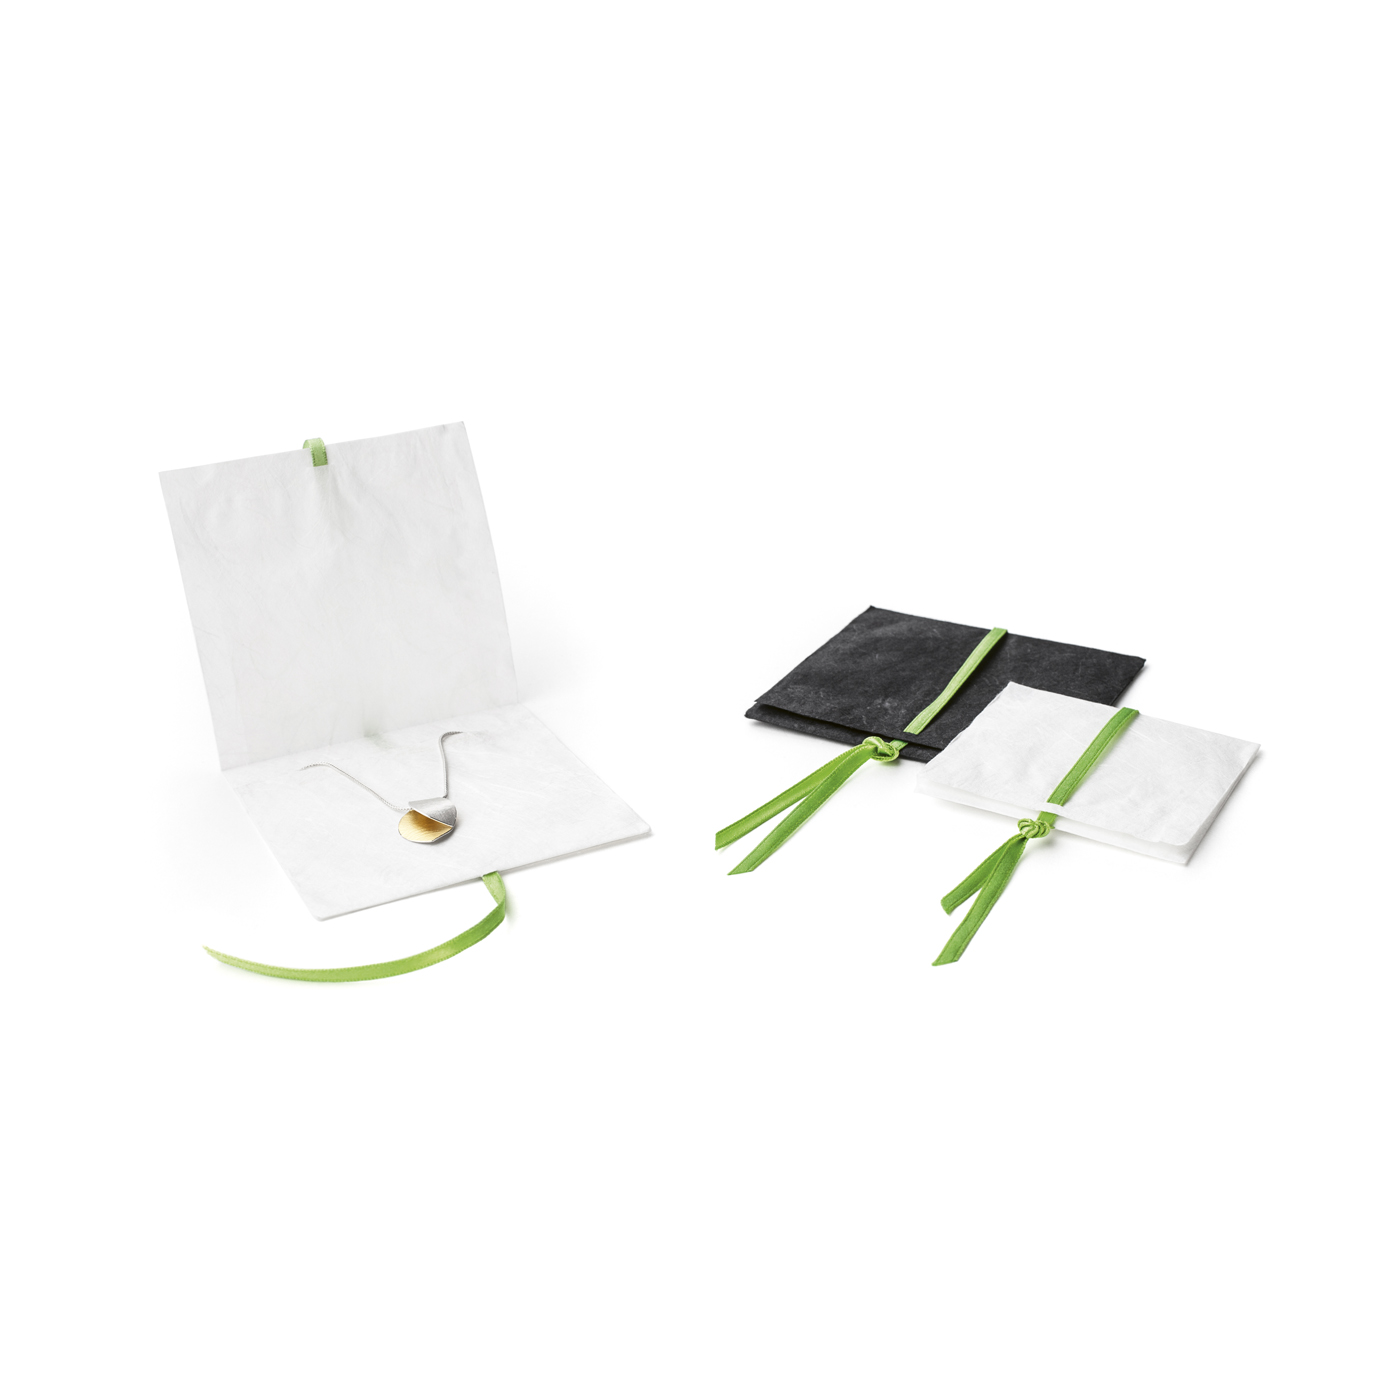 Papiertaschen, weiß mit grünem Band, 80 x 80 mm - 10 Stück